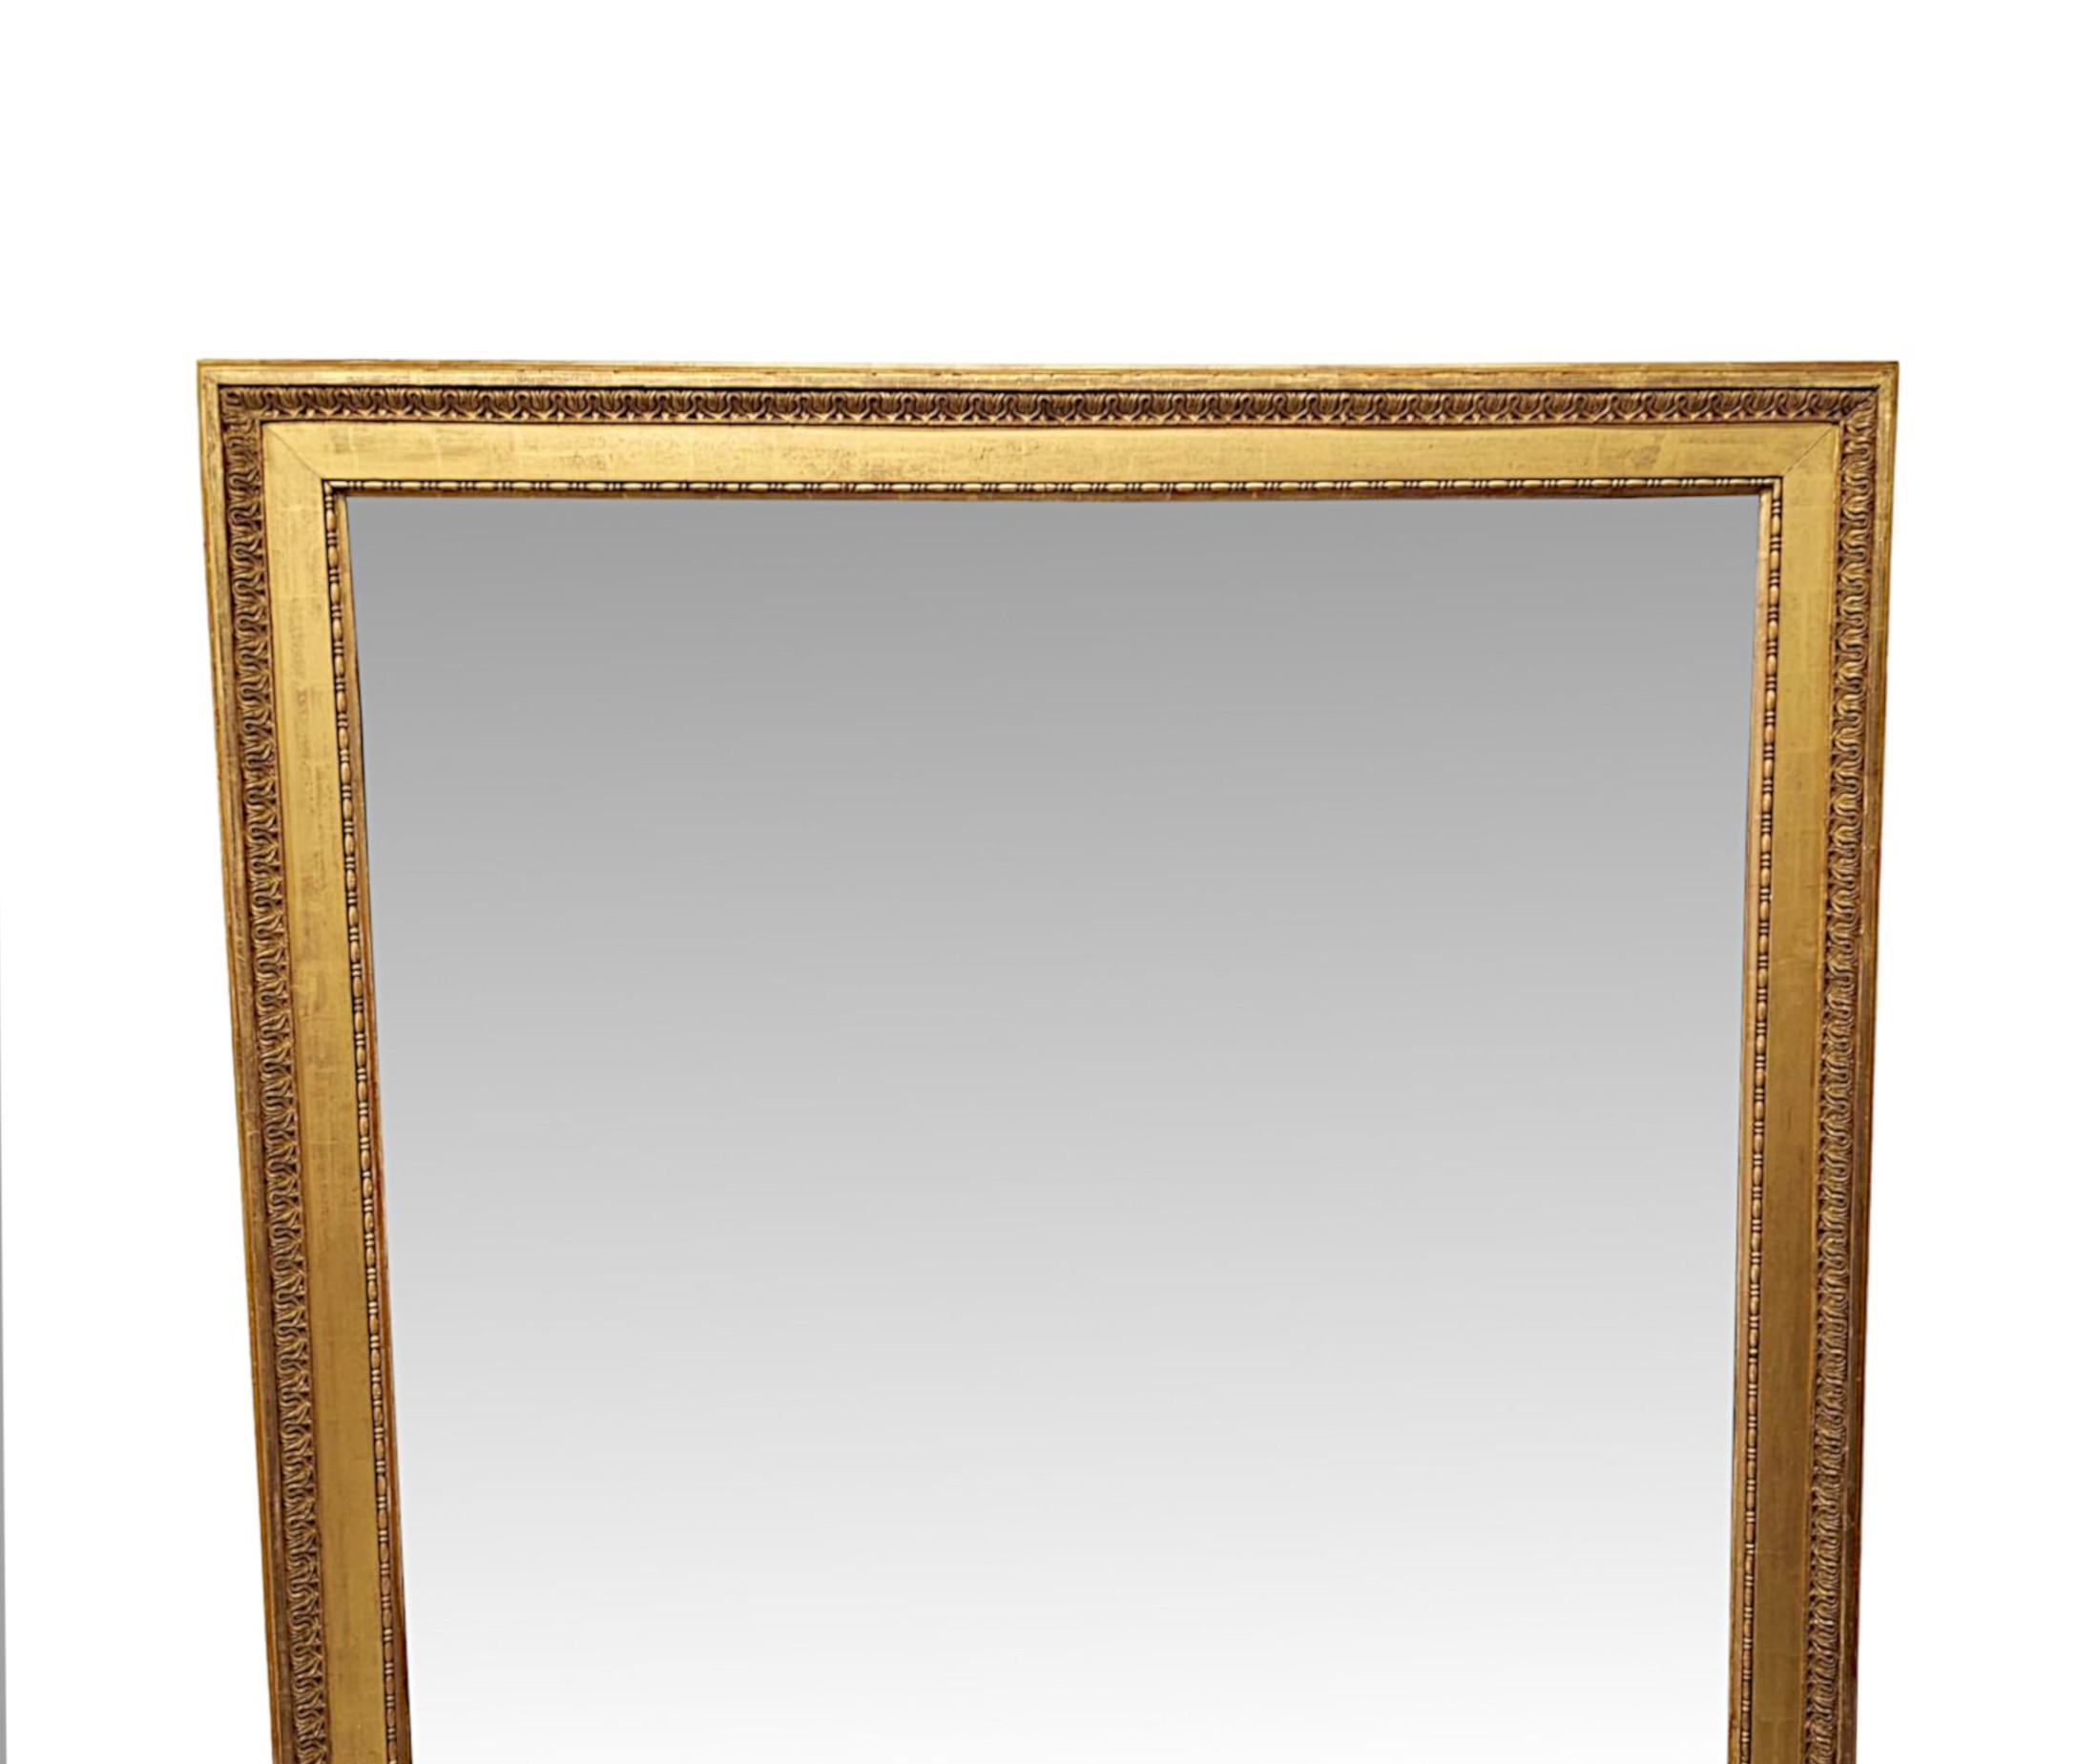 Très beau miroir à trumeau en bois doré du XIXe siècle, aux proportions impressionnantes et d'une qualité exceptionnelle.  La plaque de verre miroir de forme rectangulaire est enchâssée dans un fabuleux cadre en bois doré sculpté à la main et